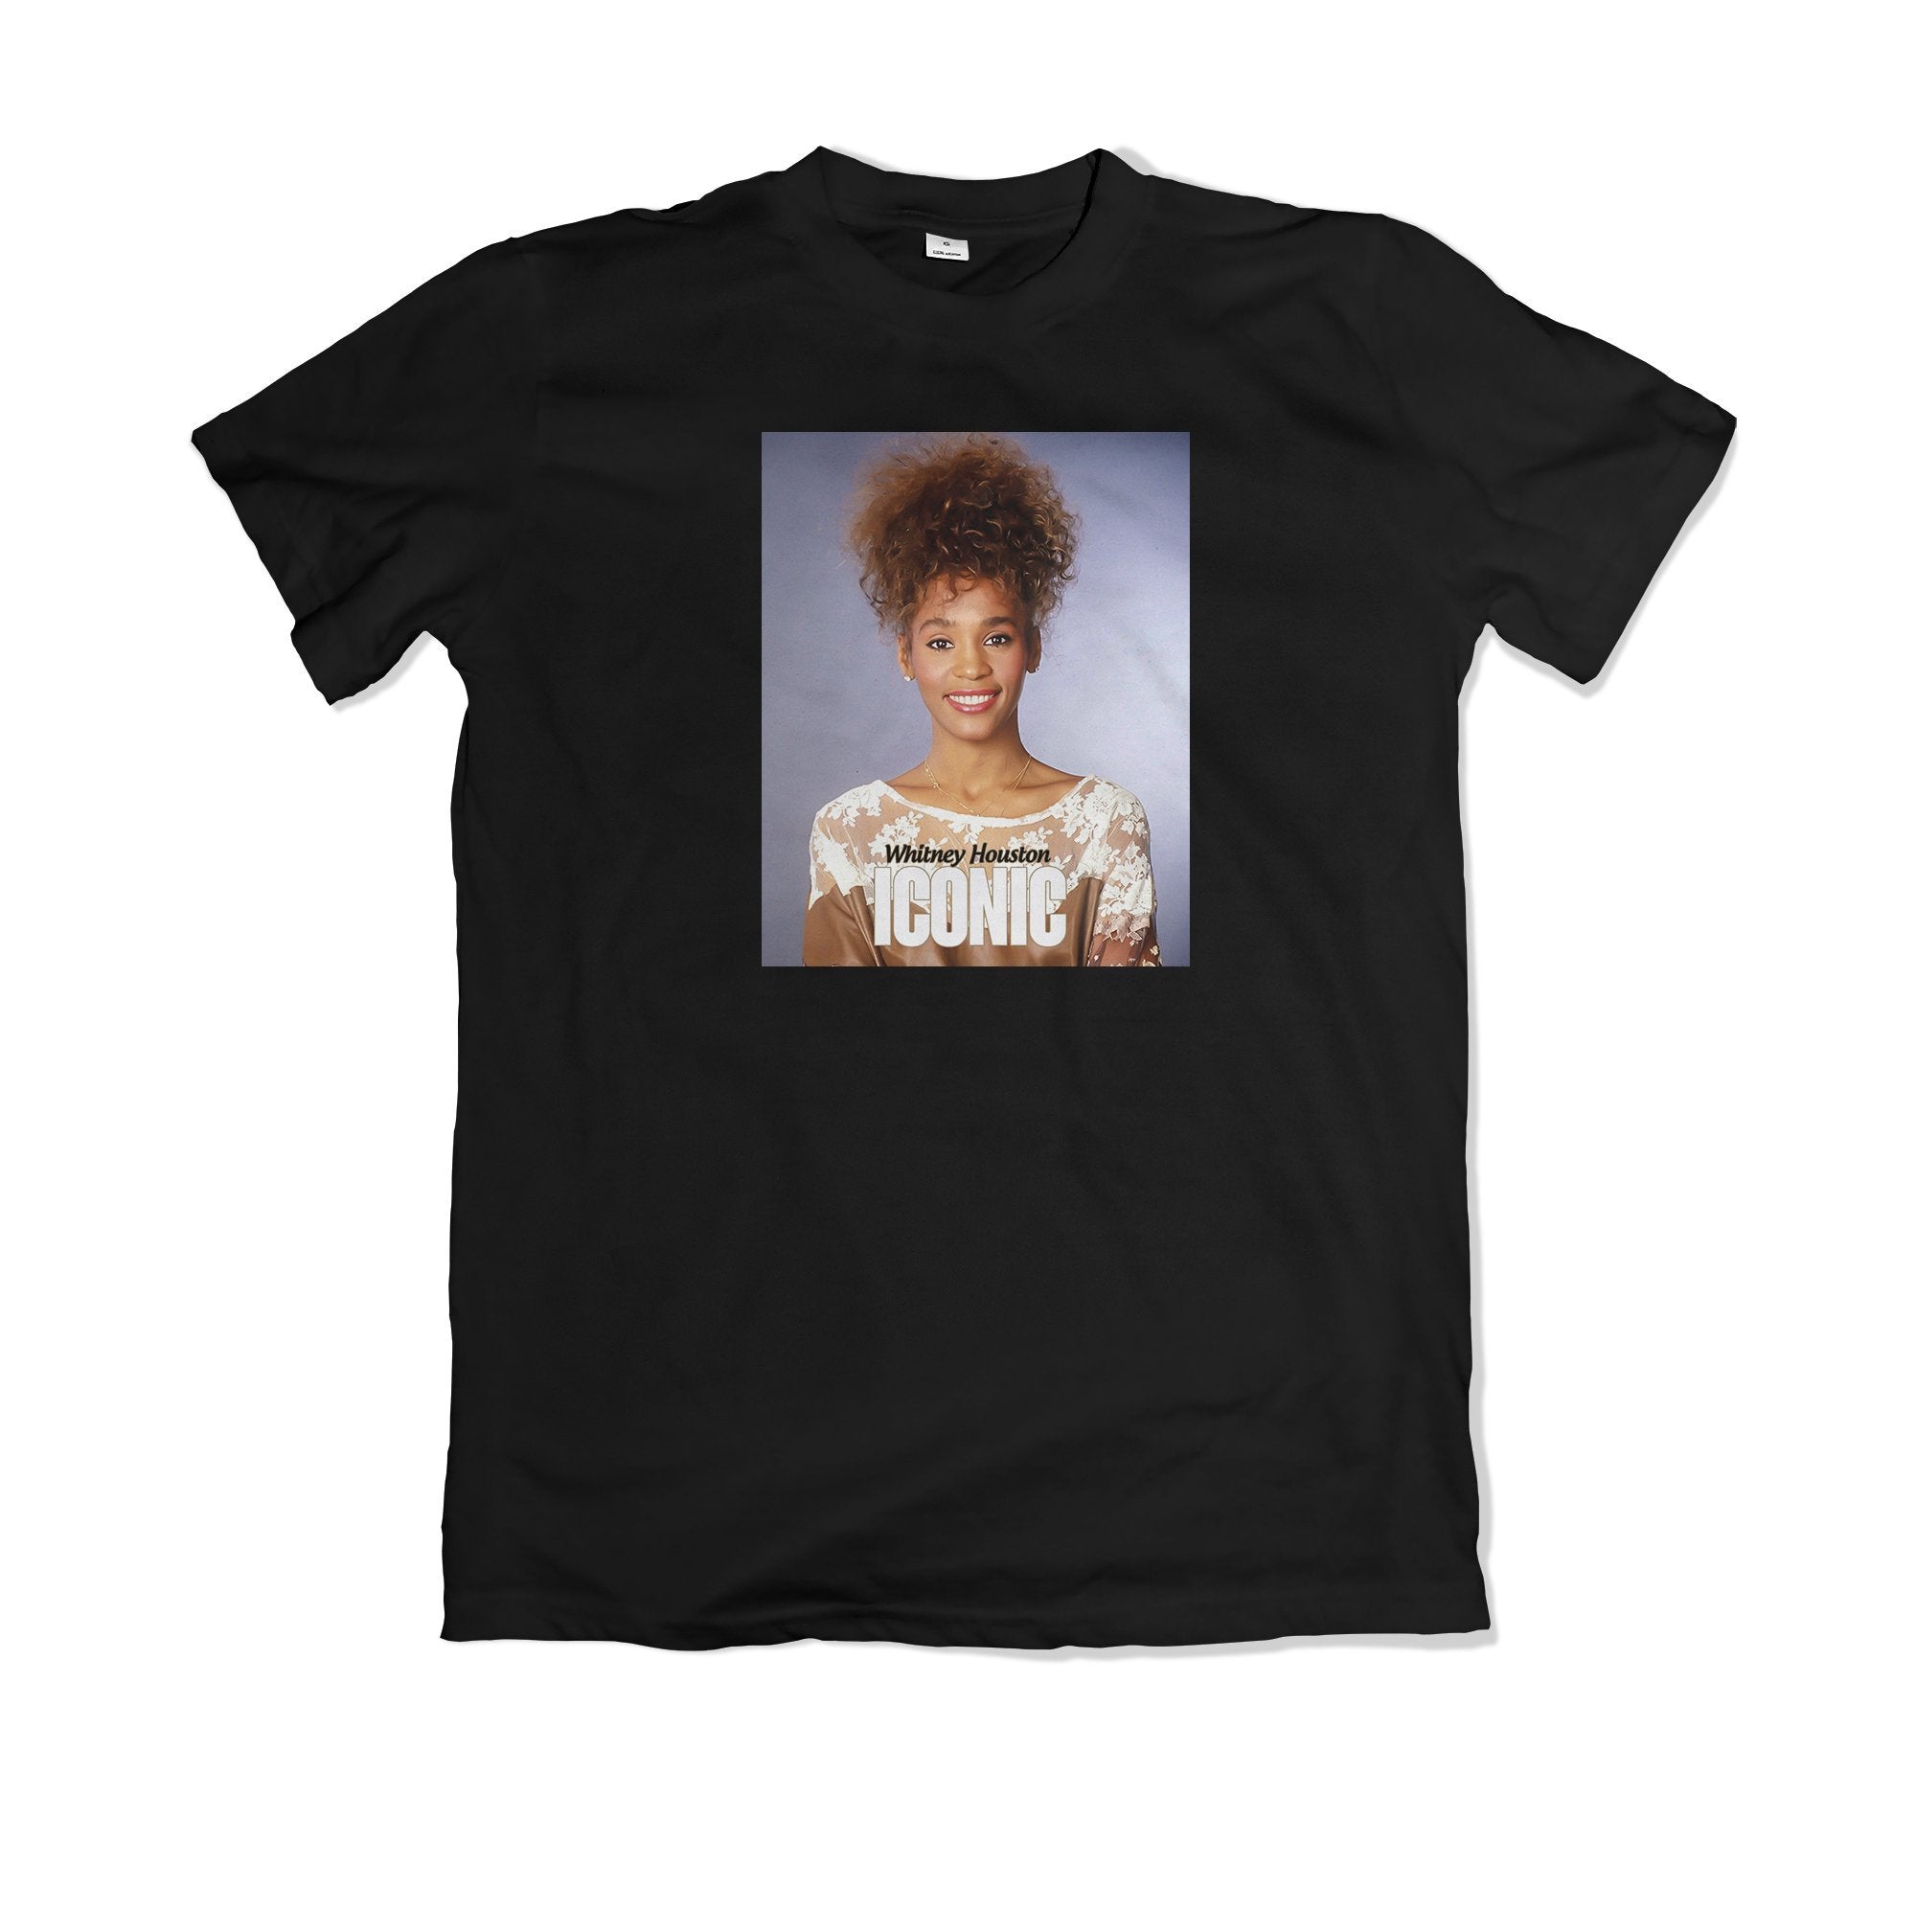 Whitney Houston Iconic Tee shirt - TOPS, TSS CUSTOM GRPHX, SNEAKER STUDIO, GOLDEN GILT, DESIGN BY TSS